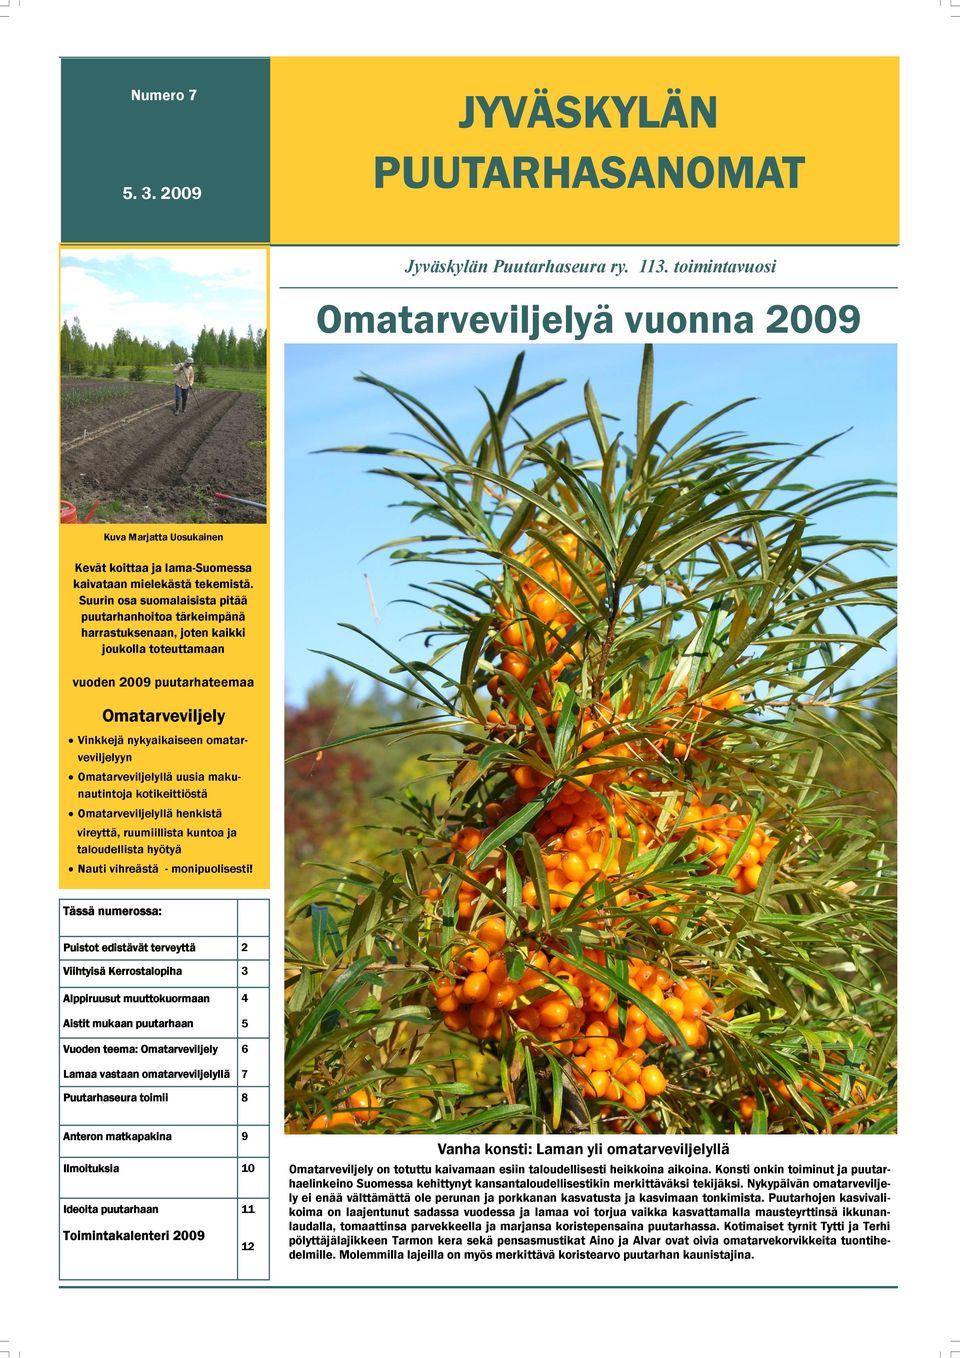 Suurin osa suomalaisista pitää puutarhanhoitoa tärkeimpänä harrastuksenaan, joten kaikki joukolla toteuttamaan vuoden 2009 puutarhateemaa Omatarveviljely Vinkkejä nykyaikaiseen omatarveviljelyyn